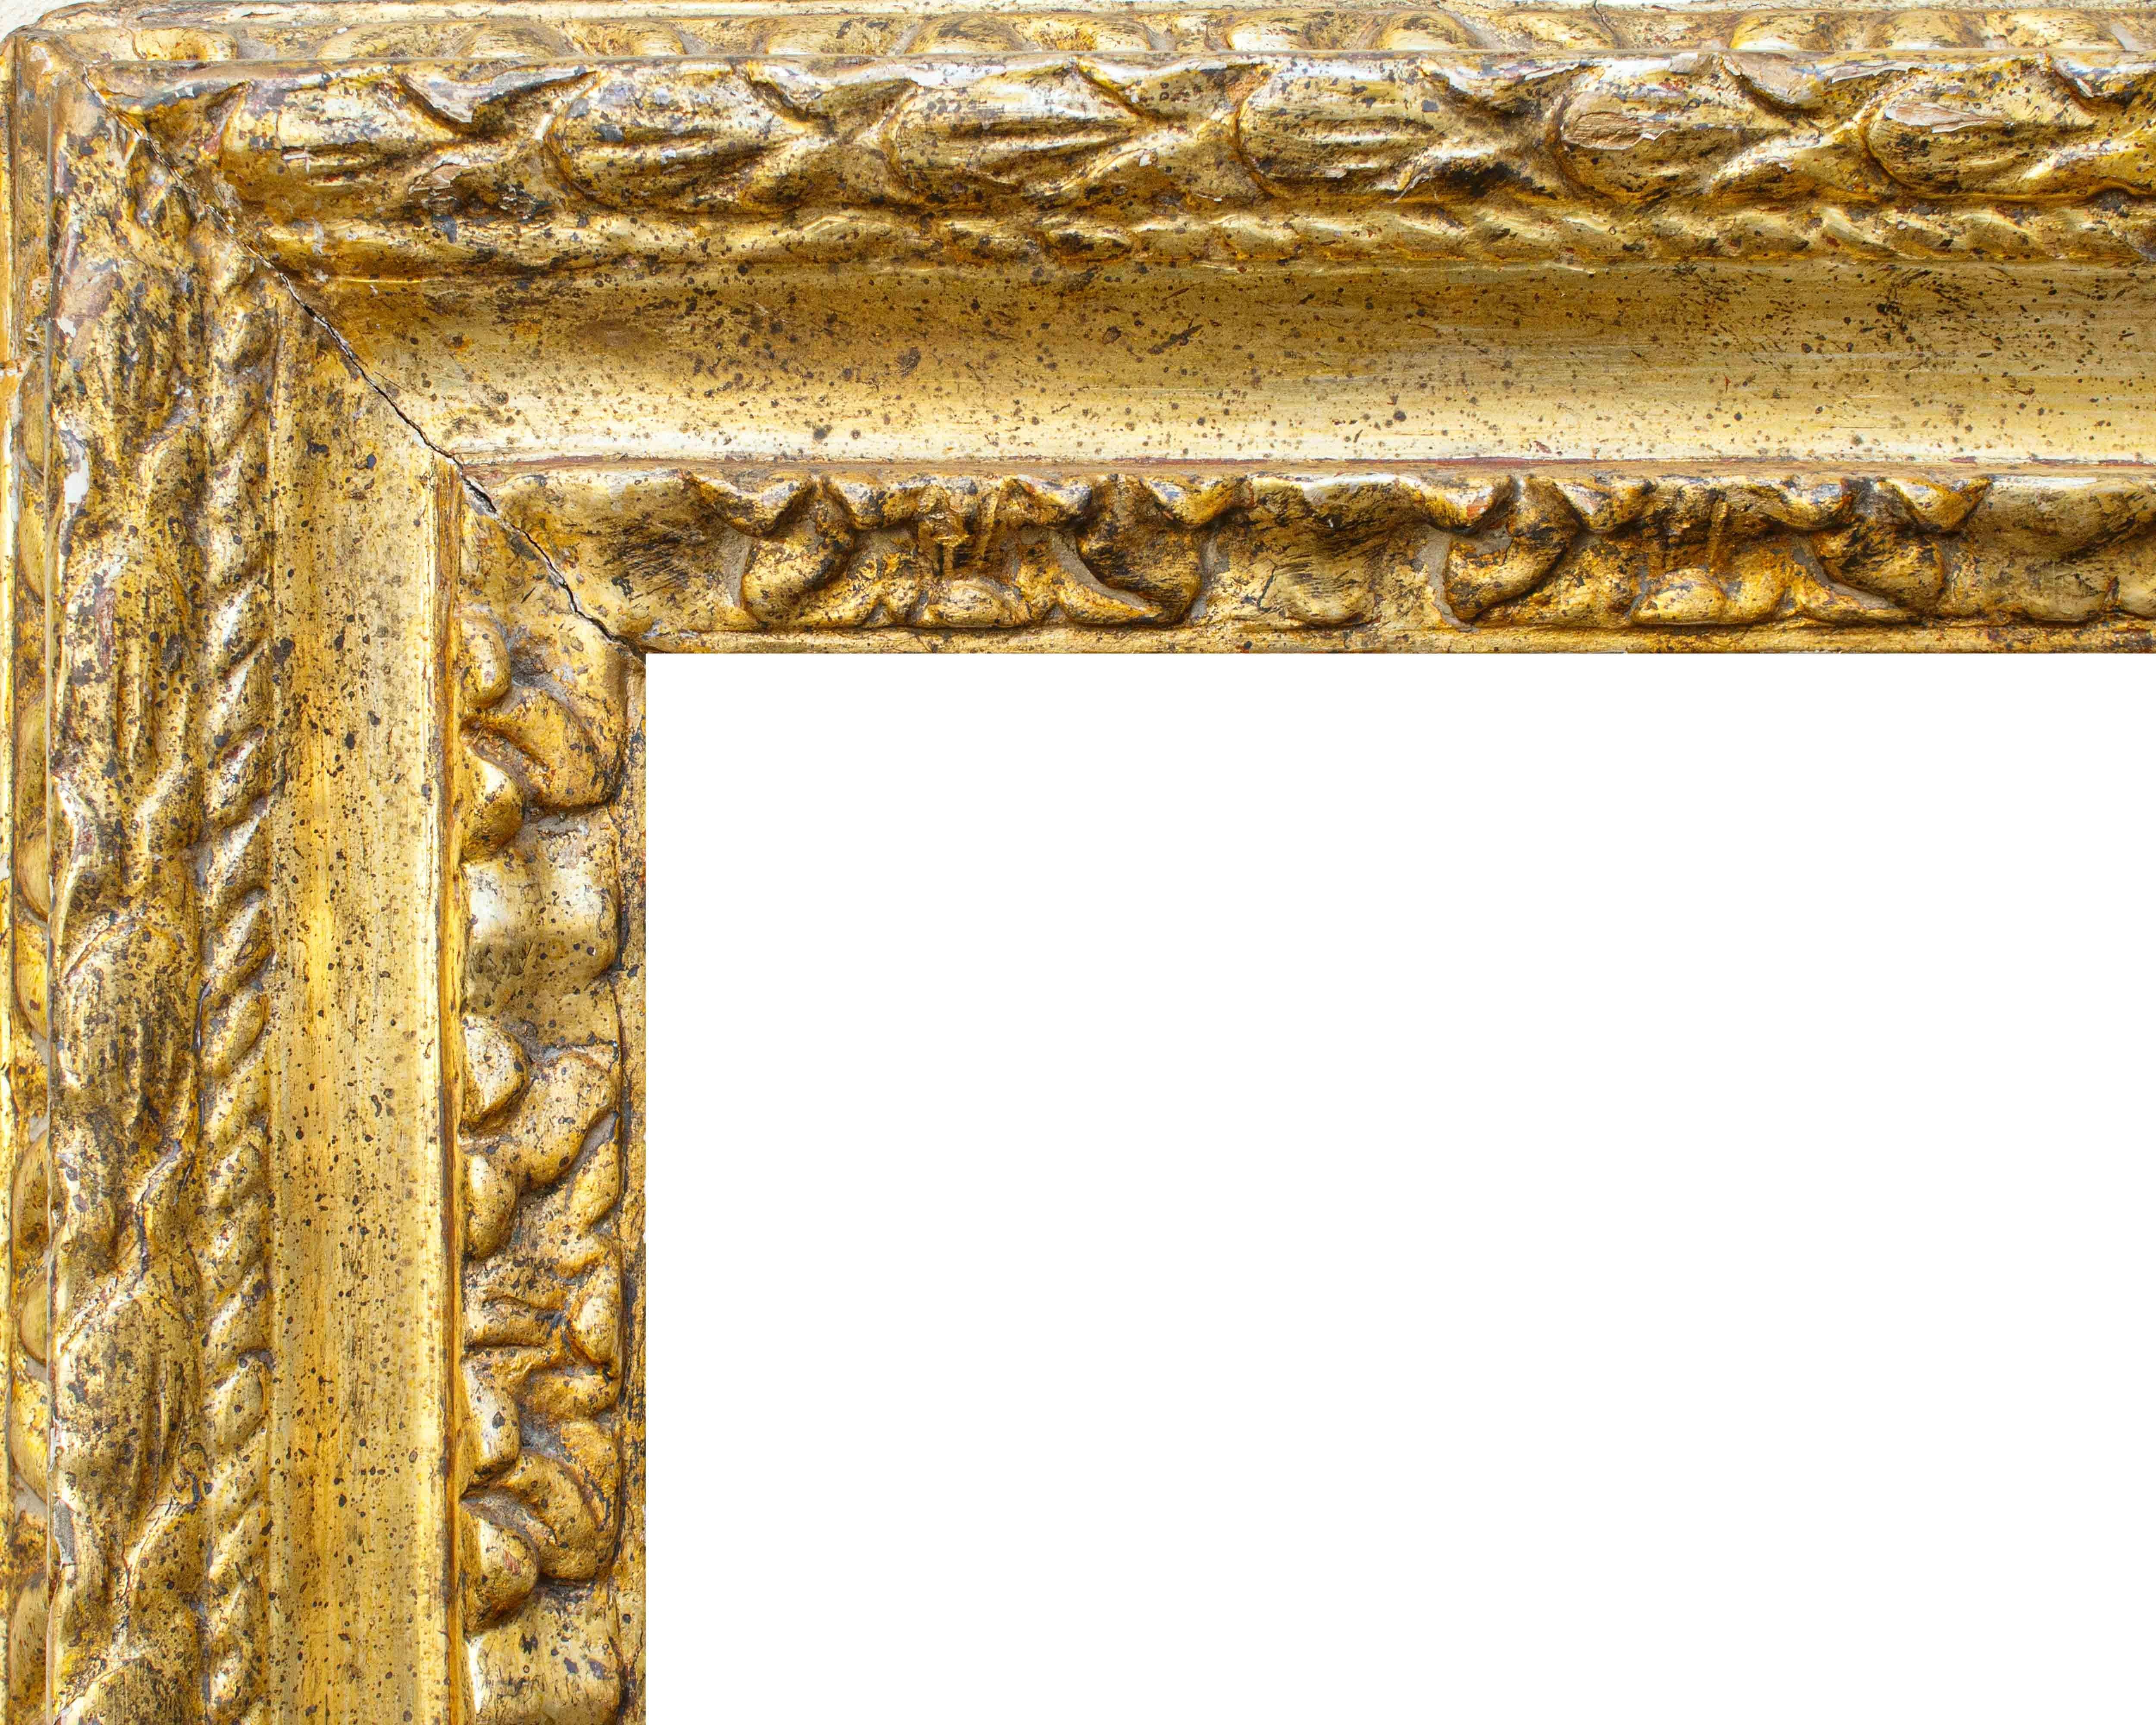 17. Jahrhundert, Mittelitalien

Rahmen

Geschnitztes und vergoldetes Mekka-Holz, 67 x 92 cm

Leicht 45 x 71

Der Rahmen besteht aus vergoldetem Mekka-Holz, das in zwei Reihen mit Blattdekorationen versehen ist, die von einer glatten Kehle und einem